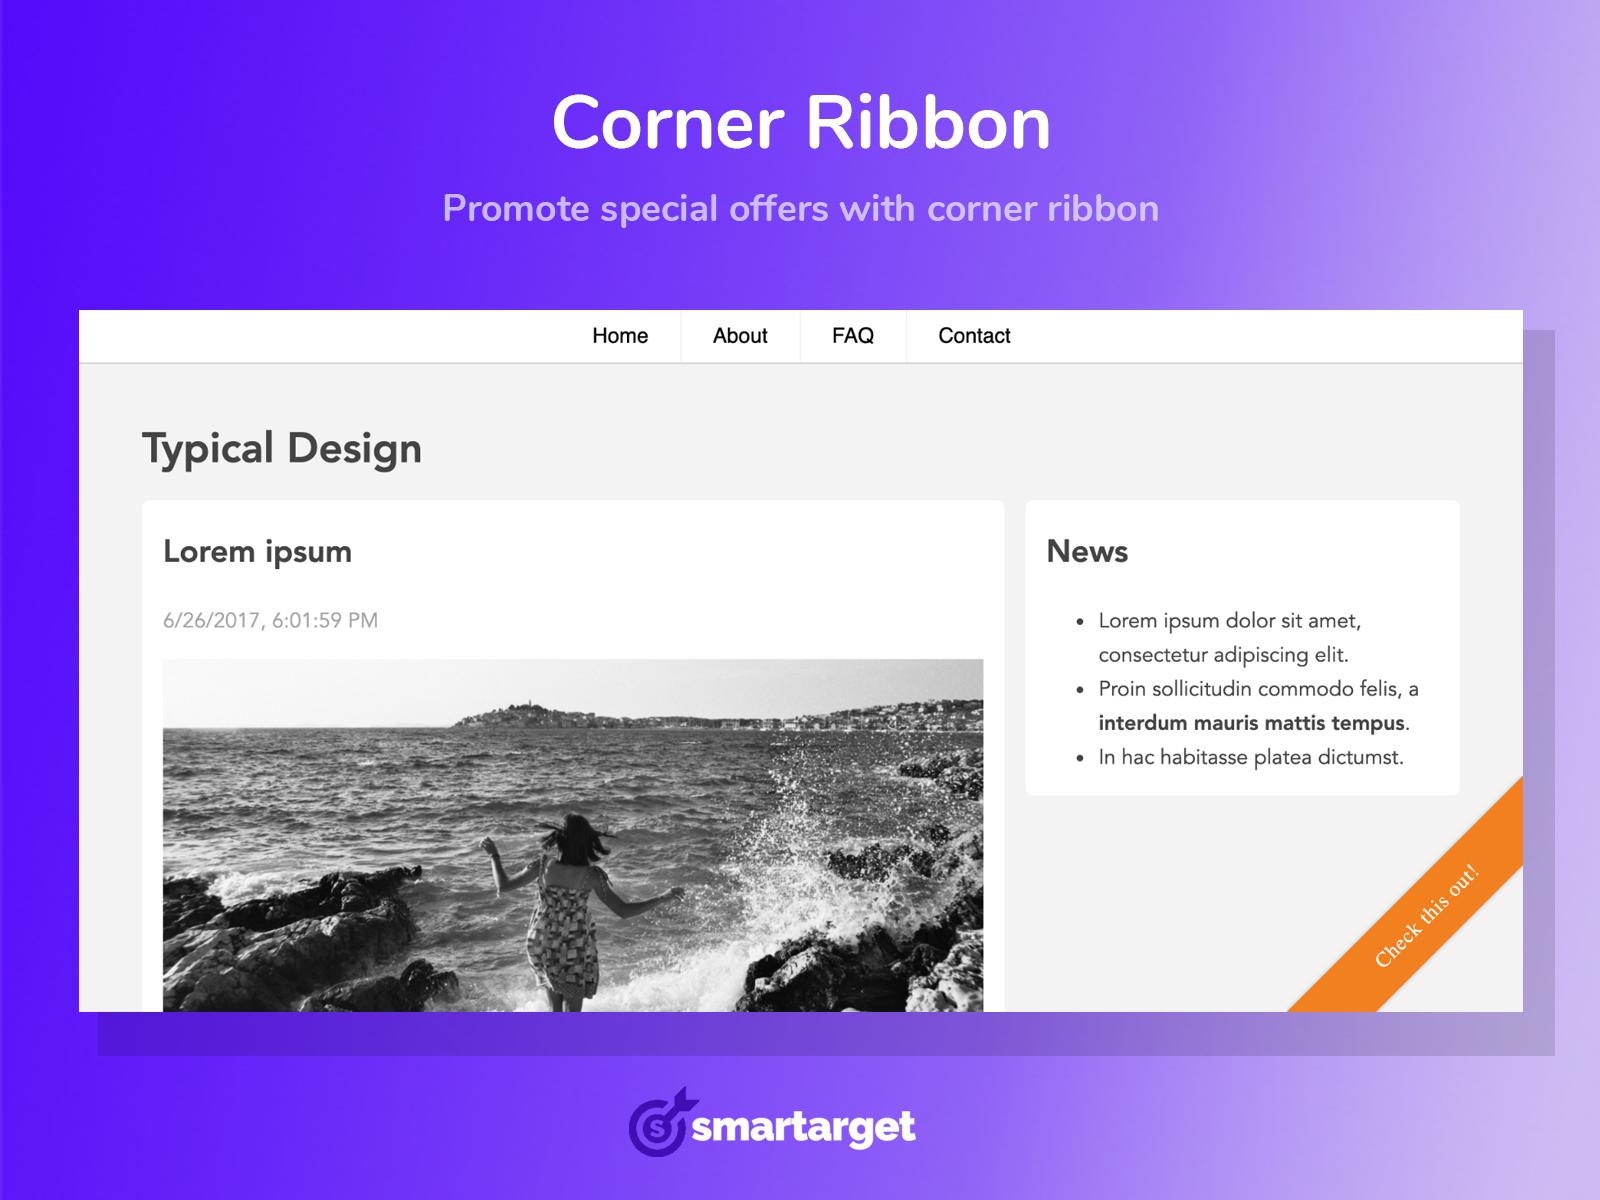 Smartarget - Corner Ribbon Image